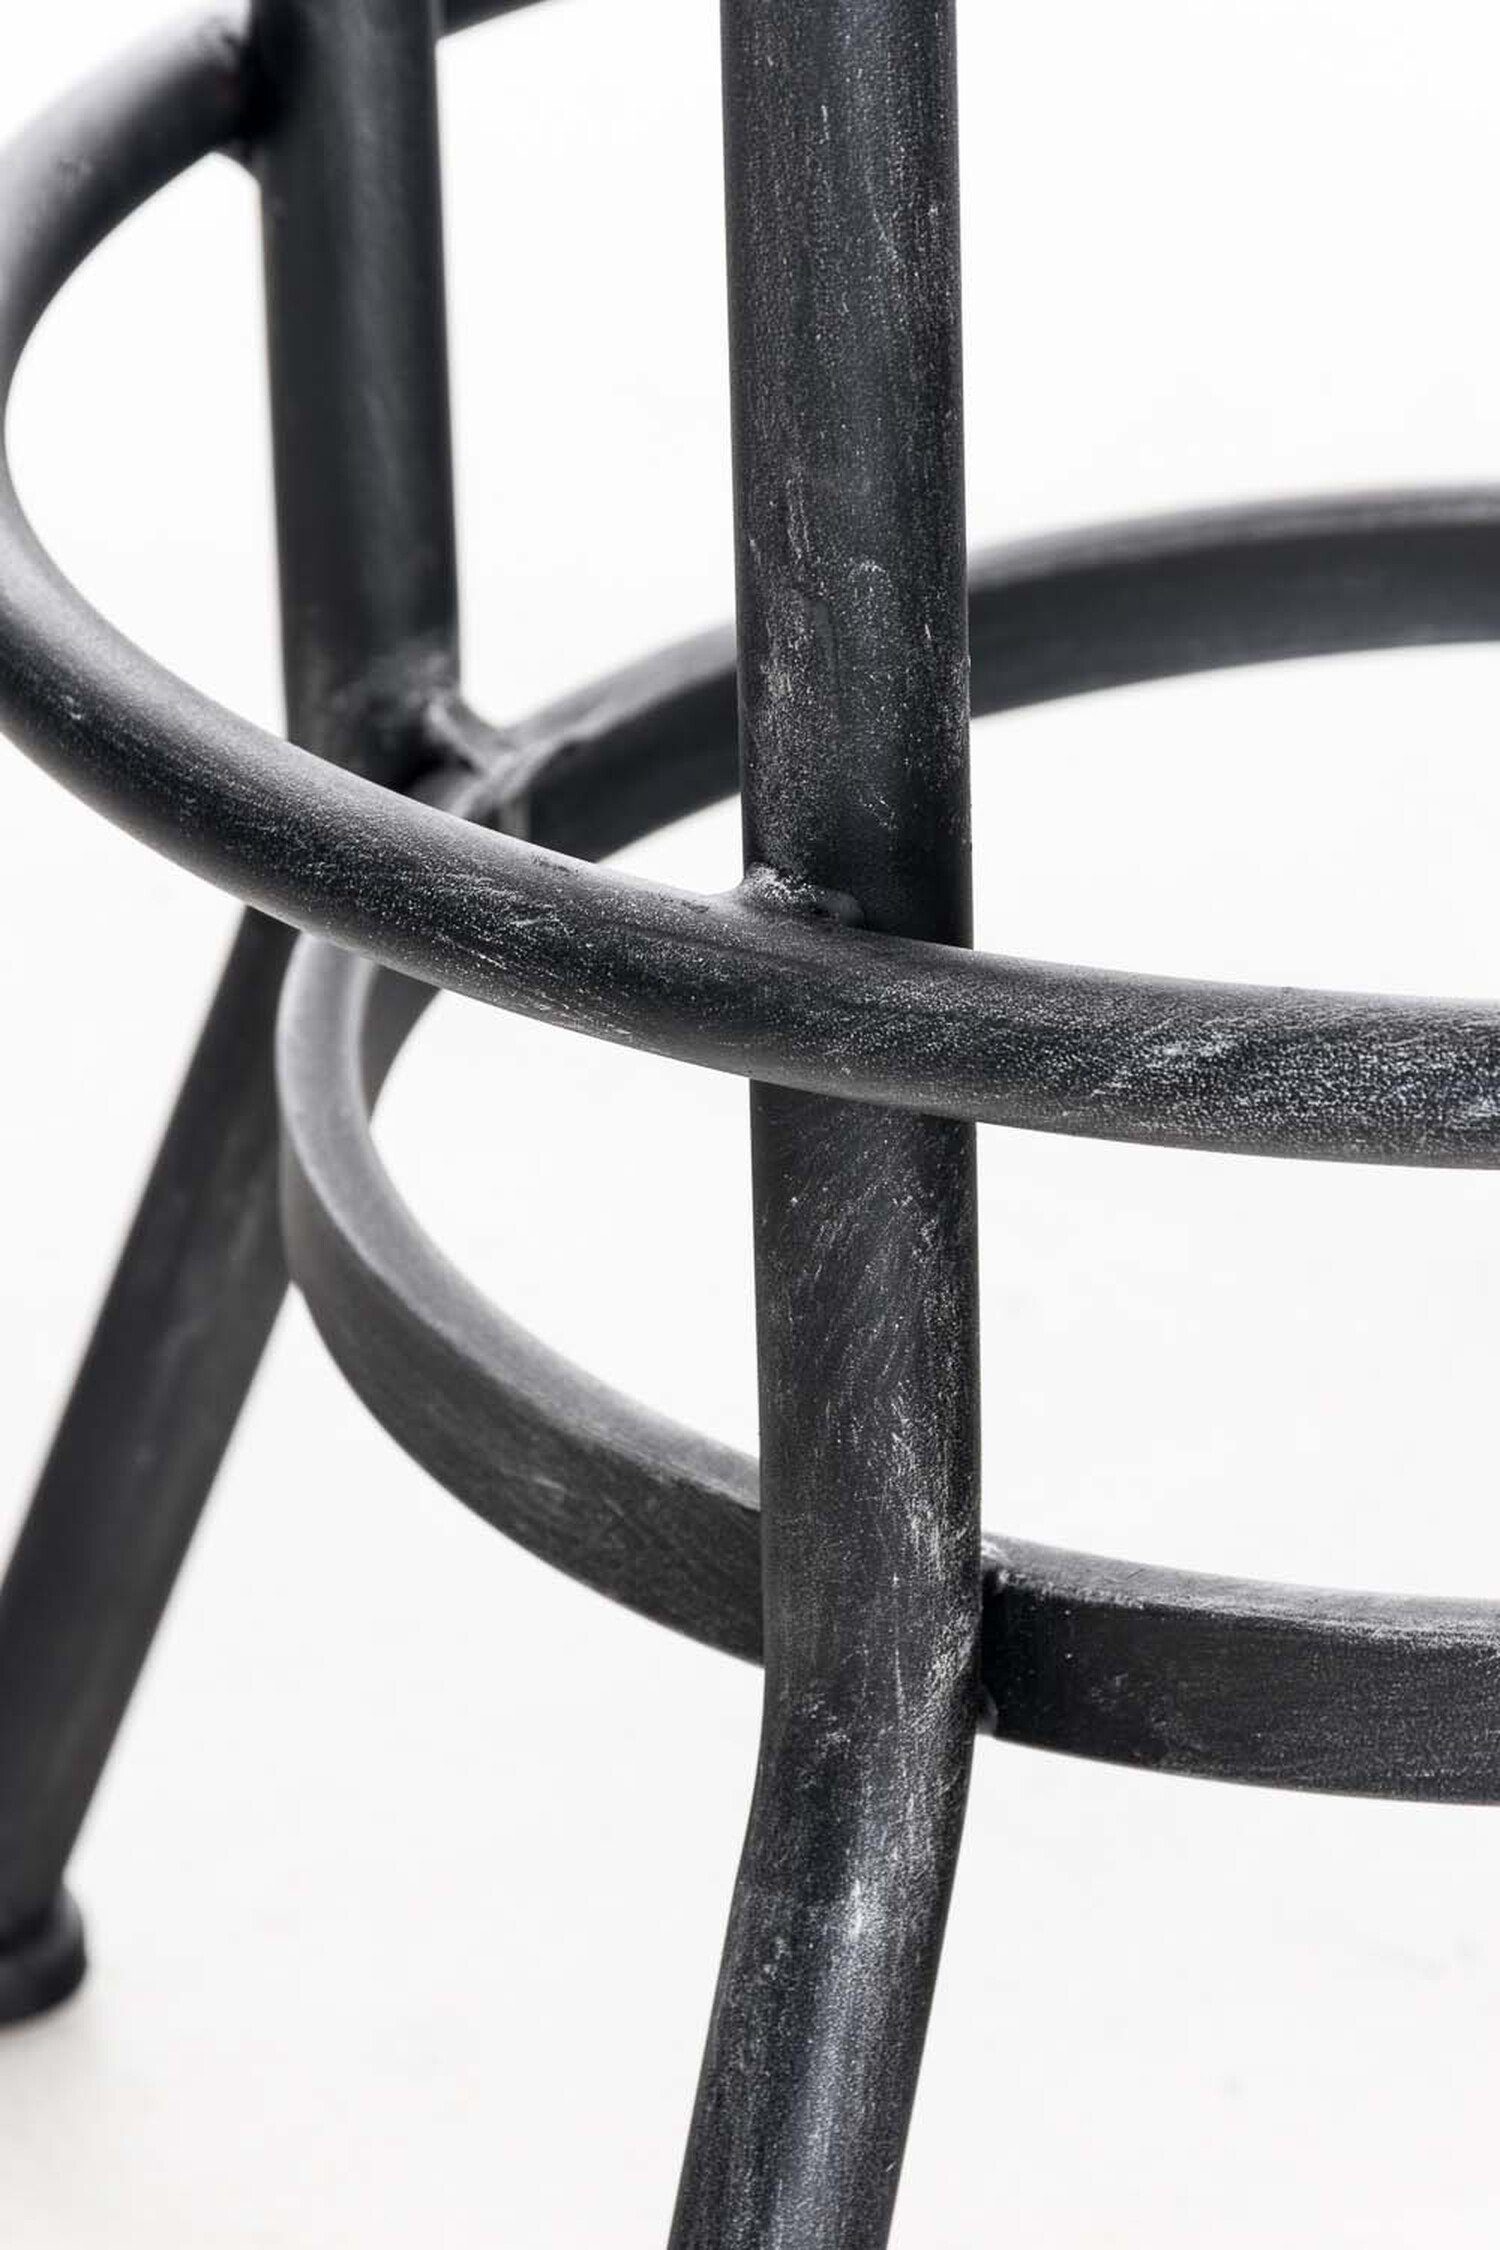 TPFLiving Barhocker Holz Sitzfläche: Fußstütze - antik (mit - - - Pino Metall & silberfarbenes Gestell: für Küche), Theke drehbar Hocker höhenverstellbar 360°